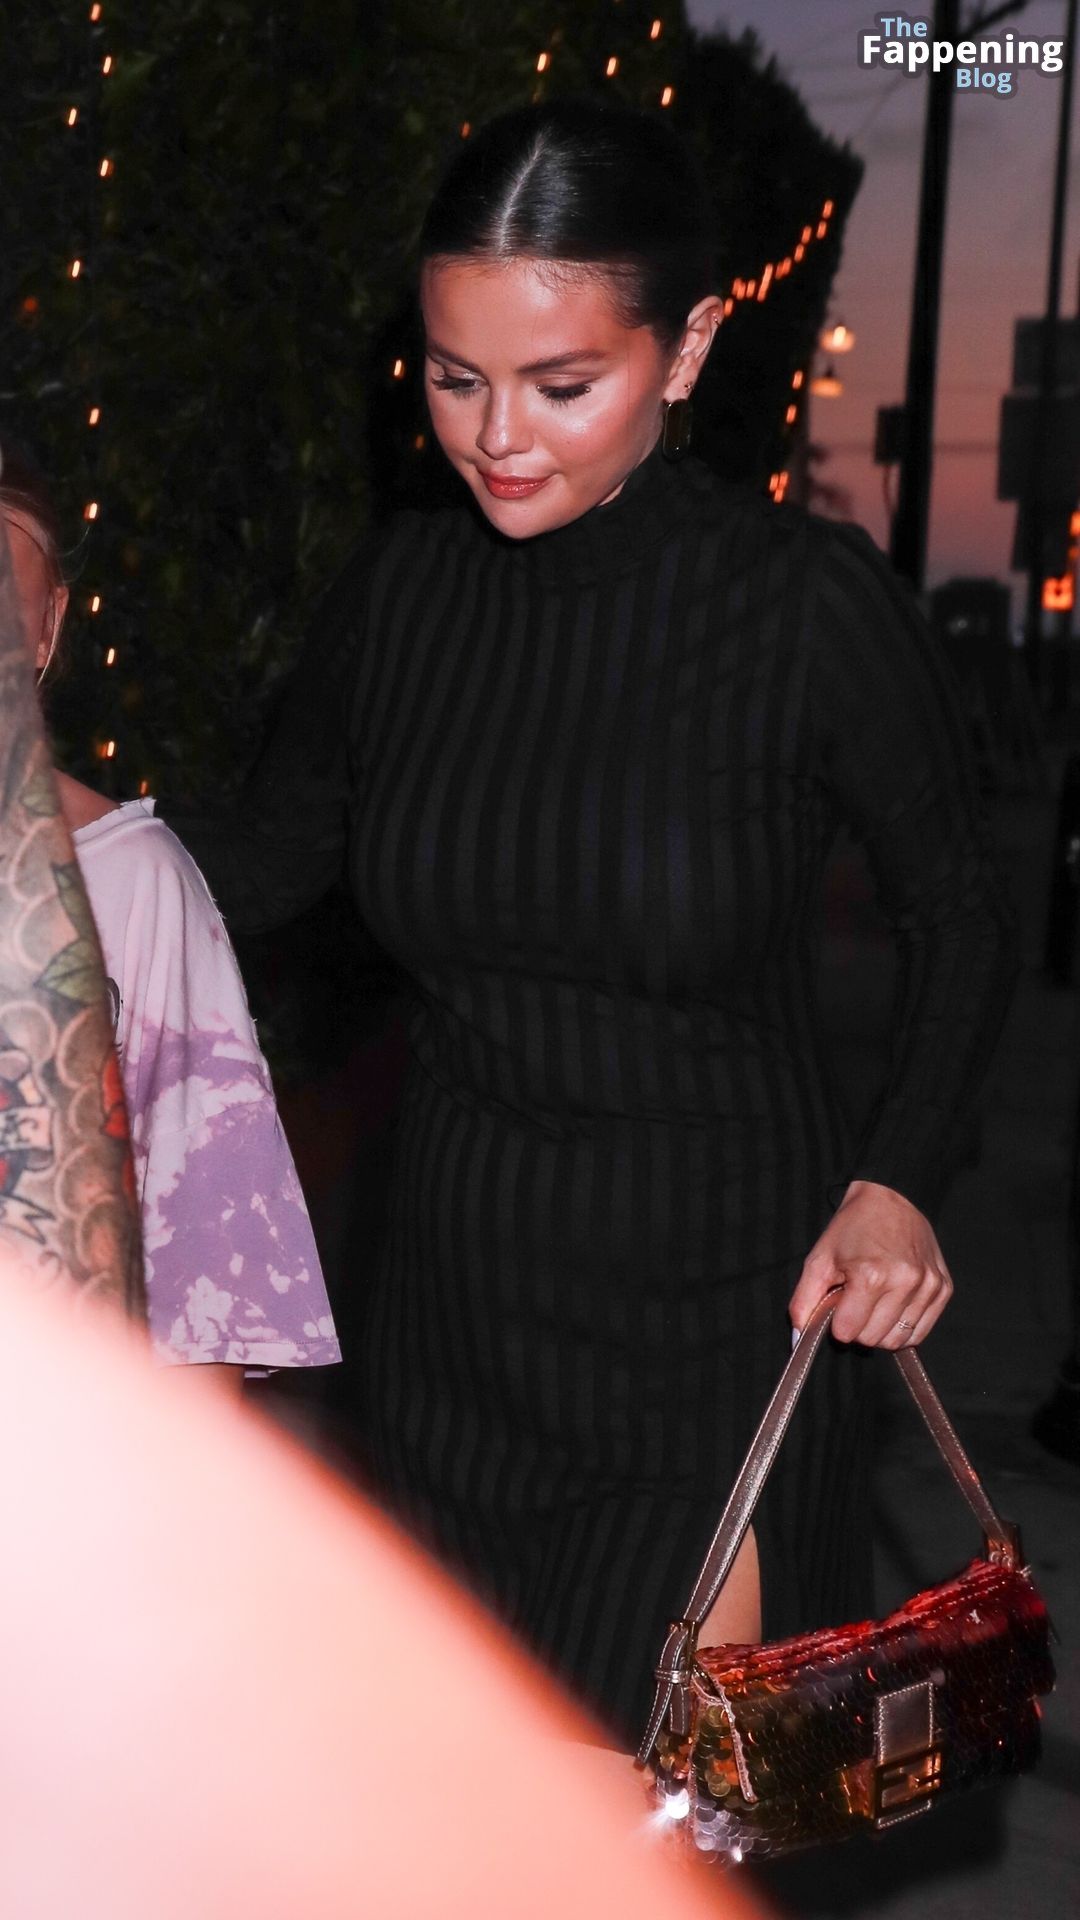 Leggy Selena Gomez Goes Out to Dinner at Giorgio Baldi (130 Photos)